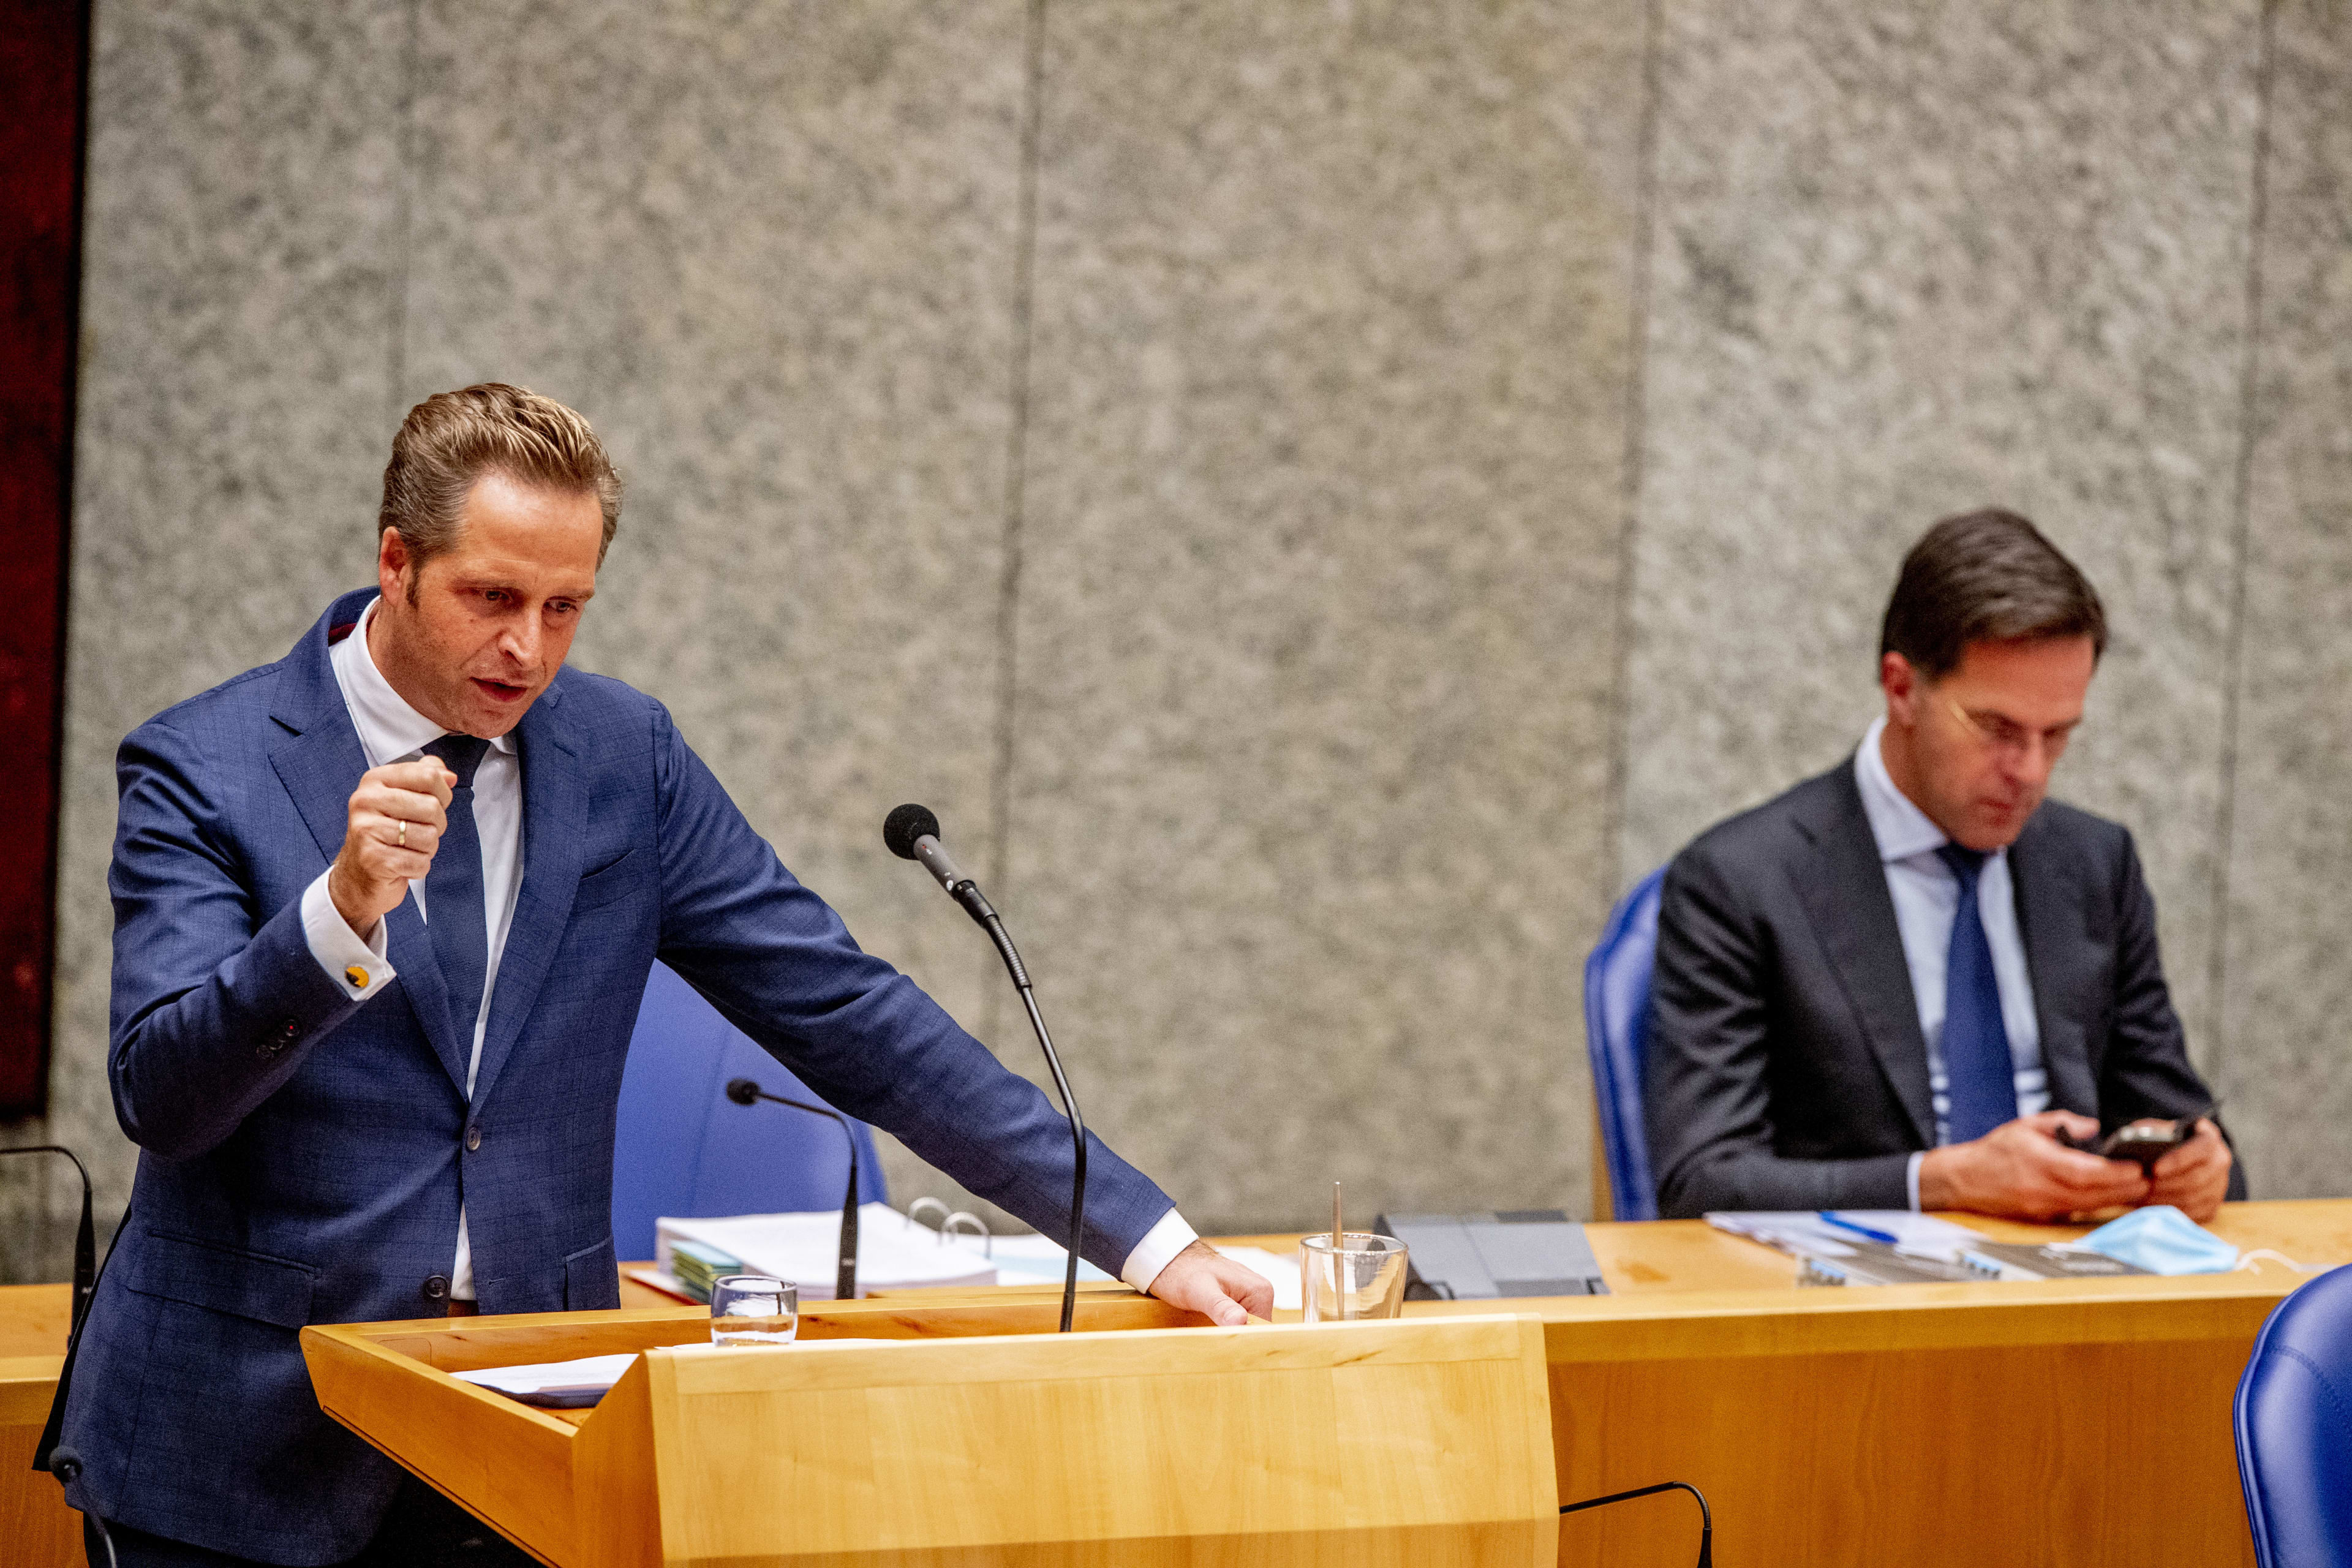 KIJK LIVE MEE: Tweede Kamer in debat met Rutte en De Jonge over coronabeleid